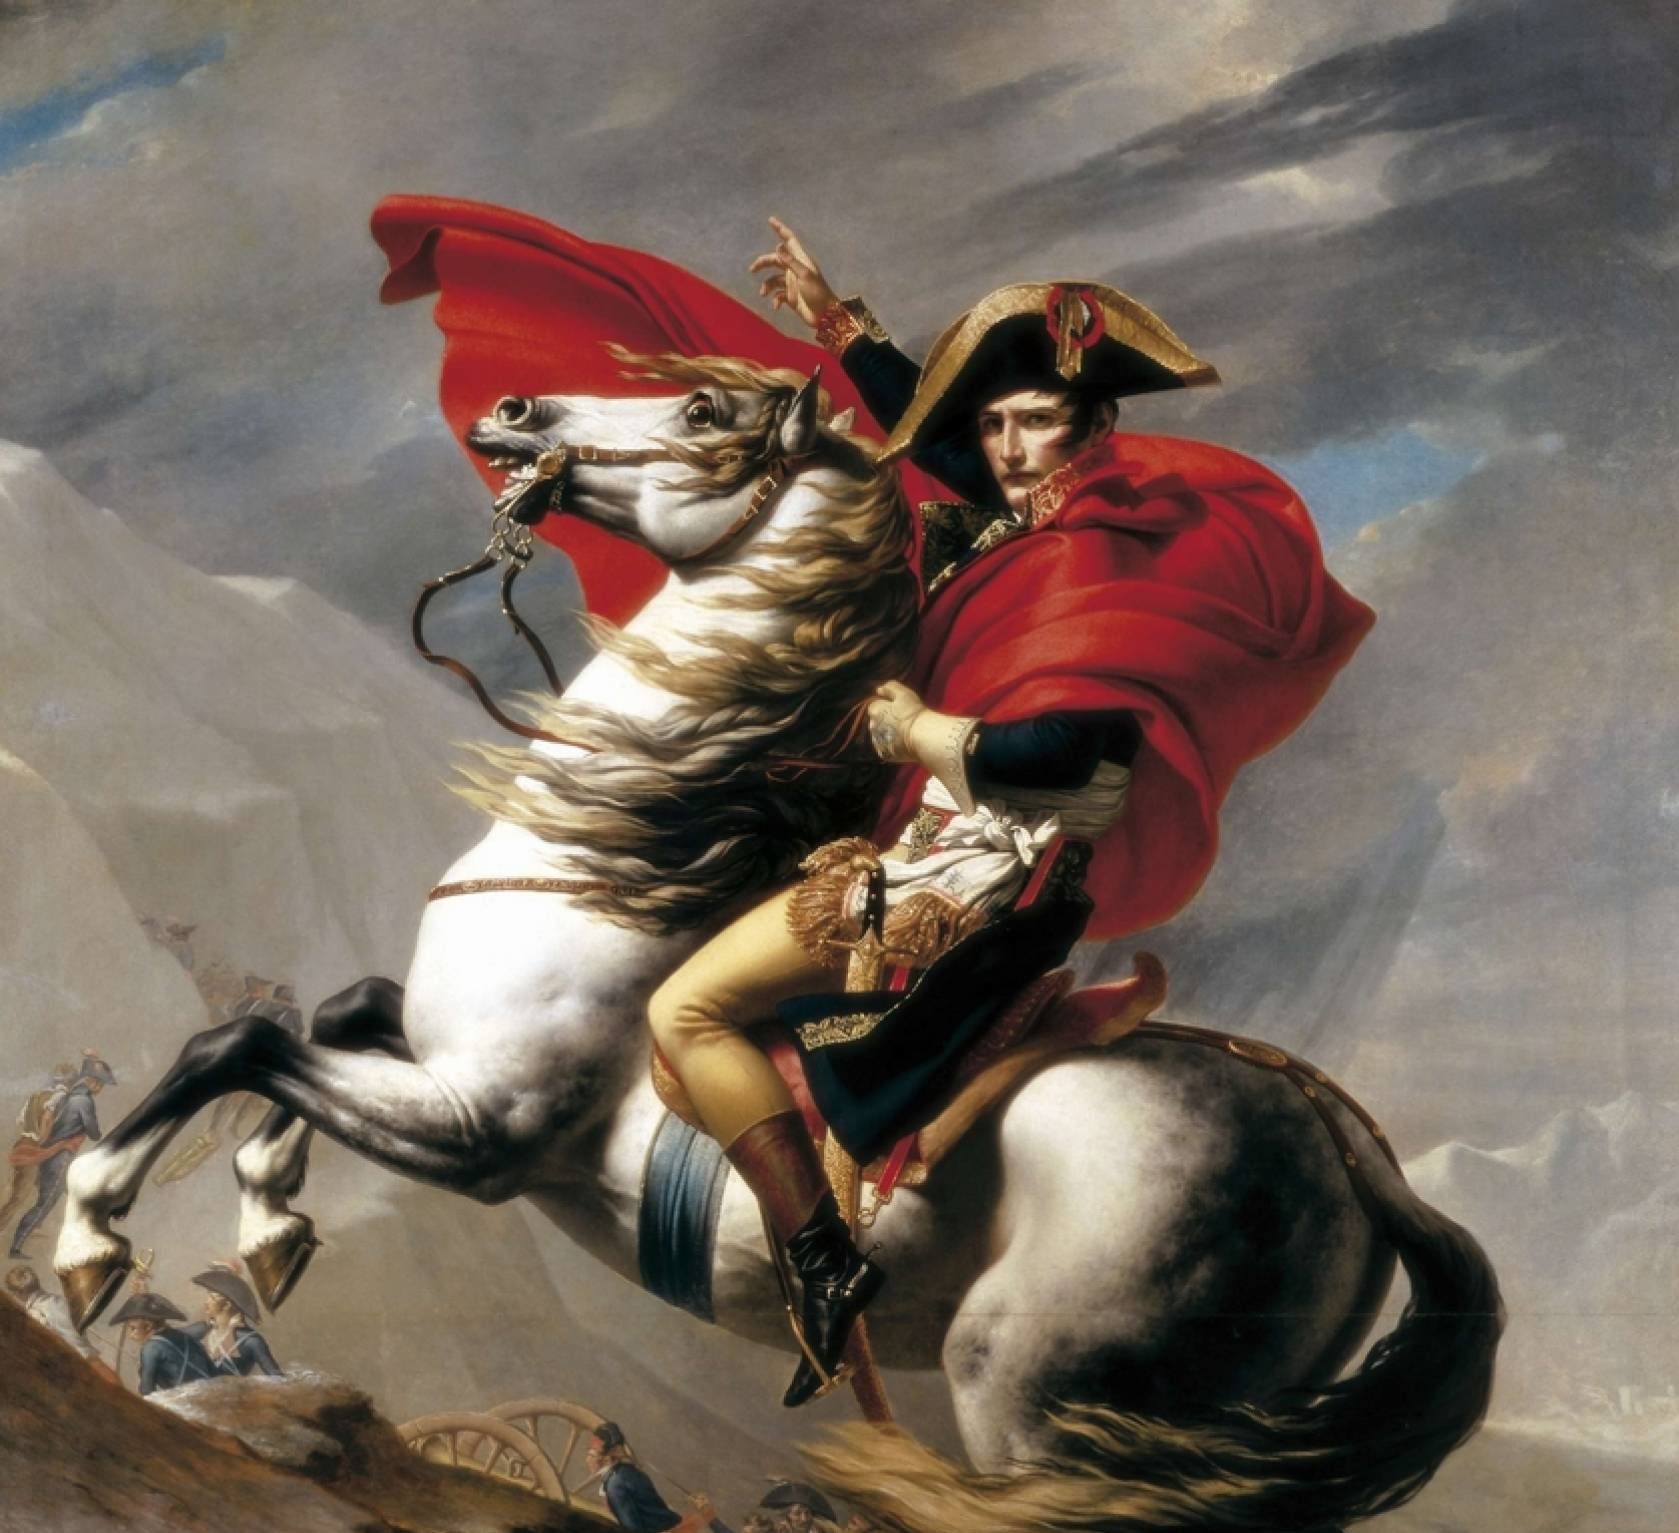 ナポレオン ボナパルト名言集 座右の銘にもなるフランス革命を終結させた英雄 高年収への道